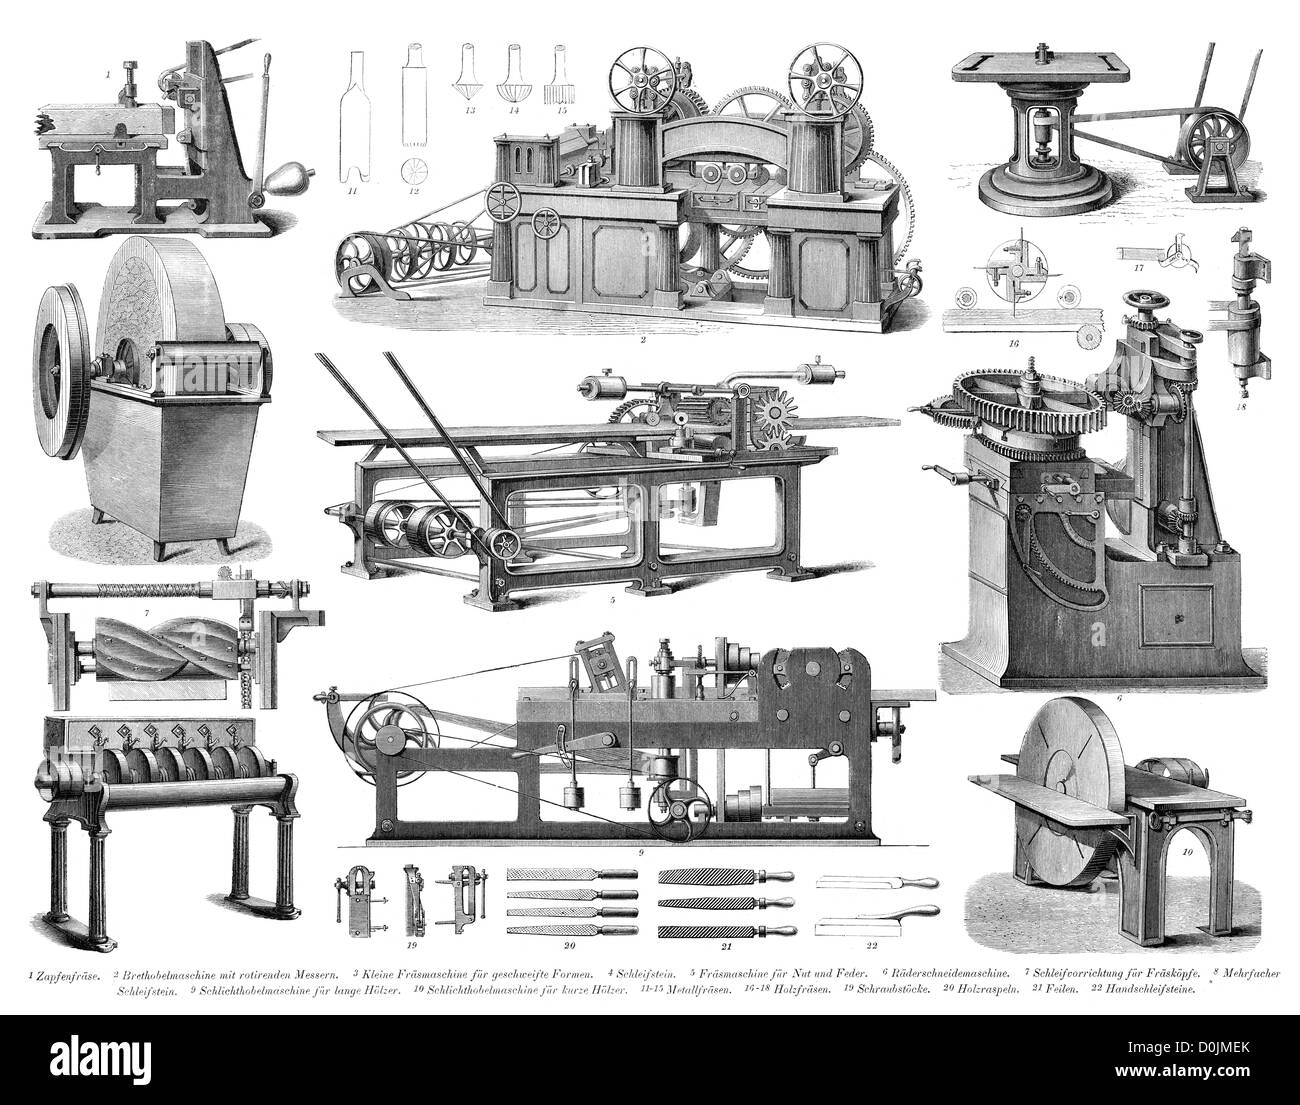 Colección de máquinas desde la revolución industrial, incluyendo múltiples Whetstone, planos de madera y fresadoras Foto de stock